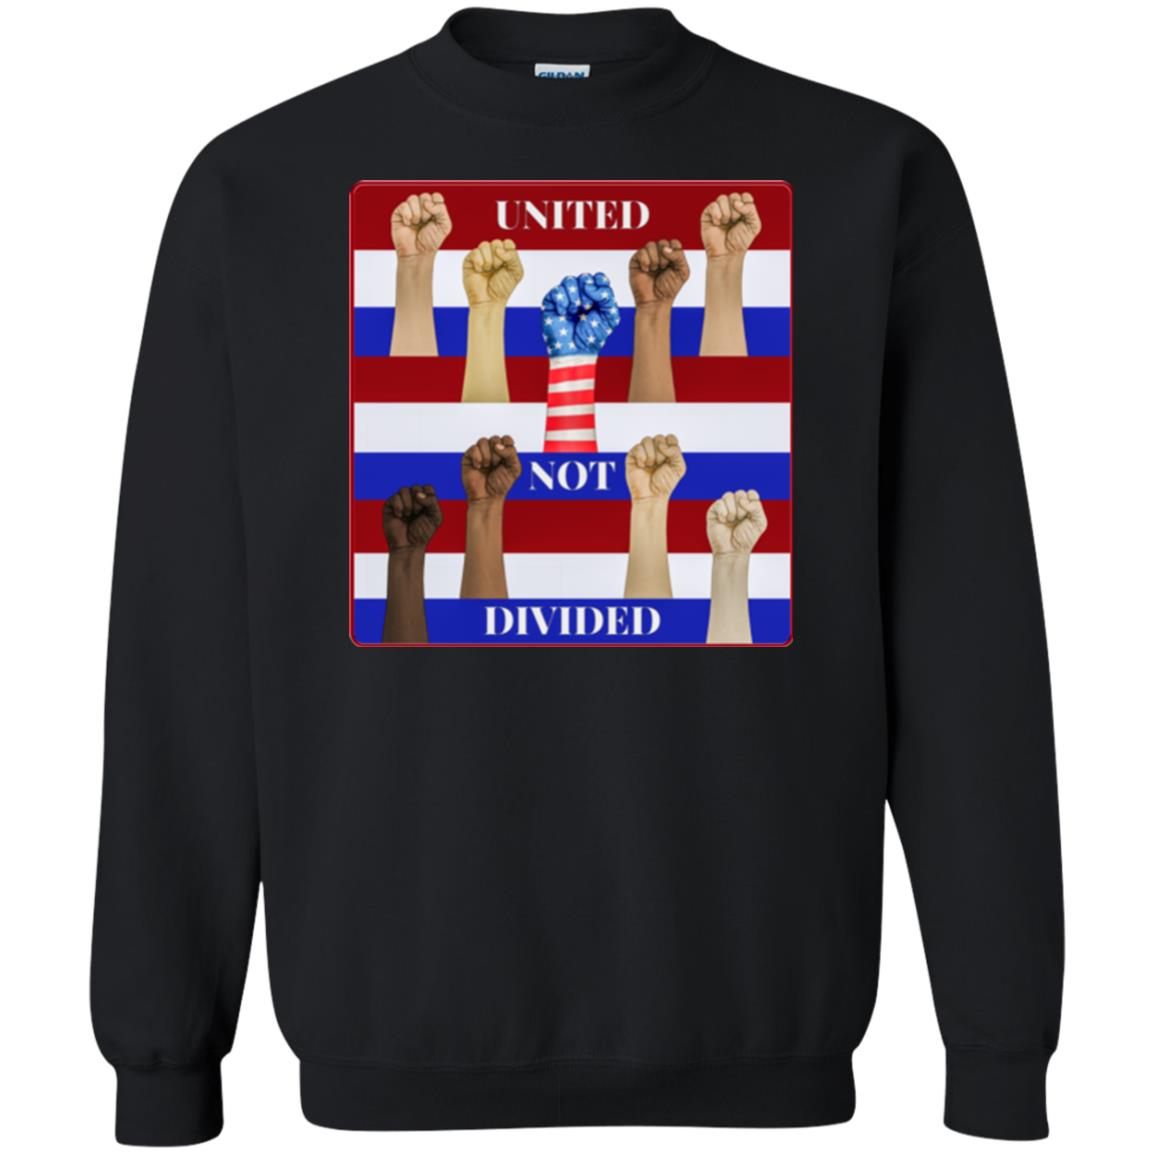 united not divided - Men's Crew Neck Sweatshirt